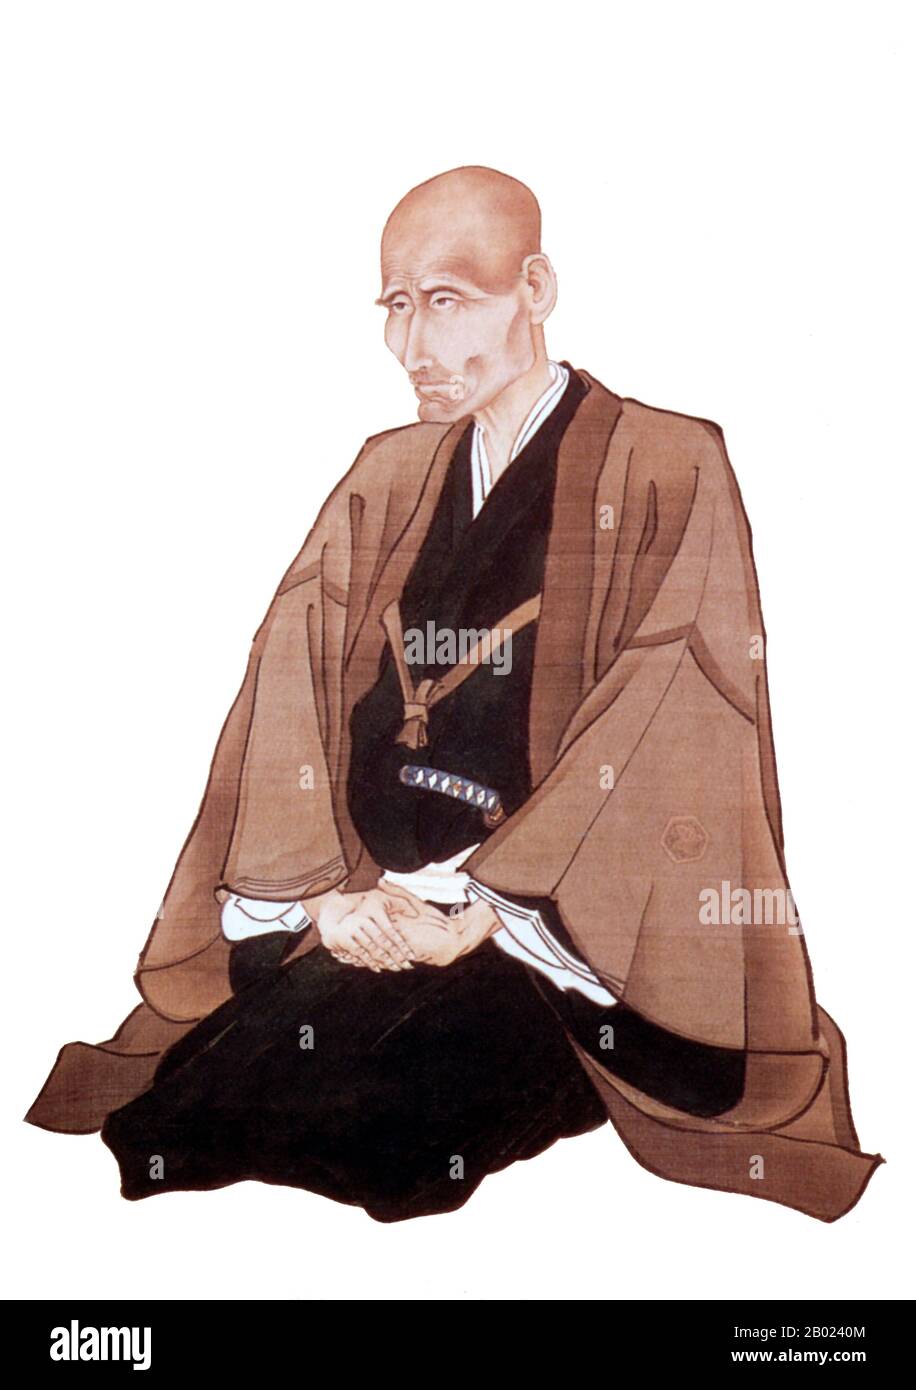 Takano Chōei (高野 長英) è nato come Gotō Kyōsai, il terzo figlio di Gotō Sōsuke, che è stato un samurai di medio rango nel dominio Mizusawa della provincia di Mutsu, che è nella prefettura di Iwate attuale. All'età iniziale, tuttavia, fu adottato dallo zio Takano Gensai che aveva studiato medicina sotto Sugita Genpaku e influenzato Chōei a seguire nella stessa professione. Studiò prima medicina a Tokyo Edo nel 1820 dopo aver vinto soldi in una lotteria in modo da pagare a modo suo. Lì studiò sotto il primo Sugita Hakugen, poi Yoshida Chōshuku che gli diede il nome Chōei. Dopo la morte del suo maestro nel 1824 Foto Stock